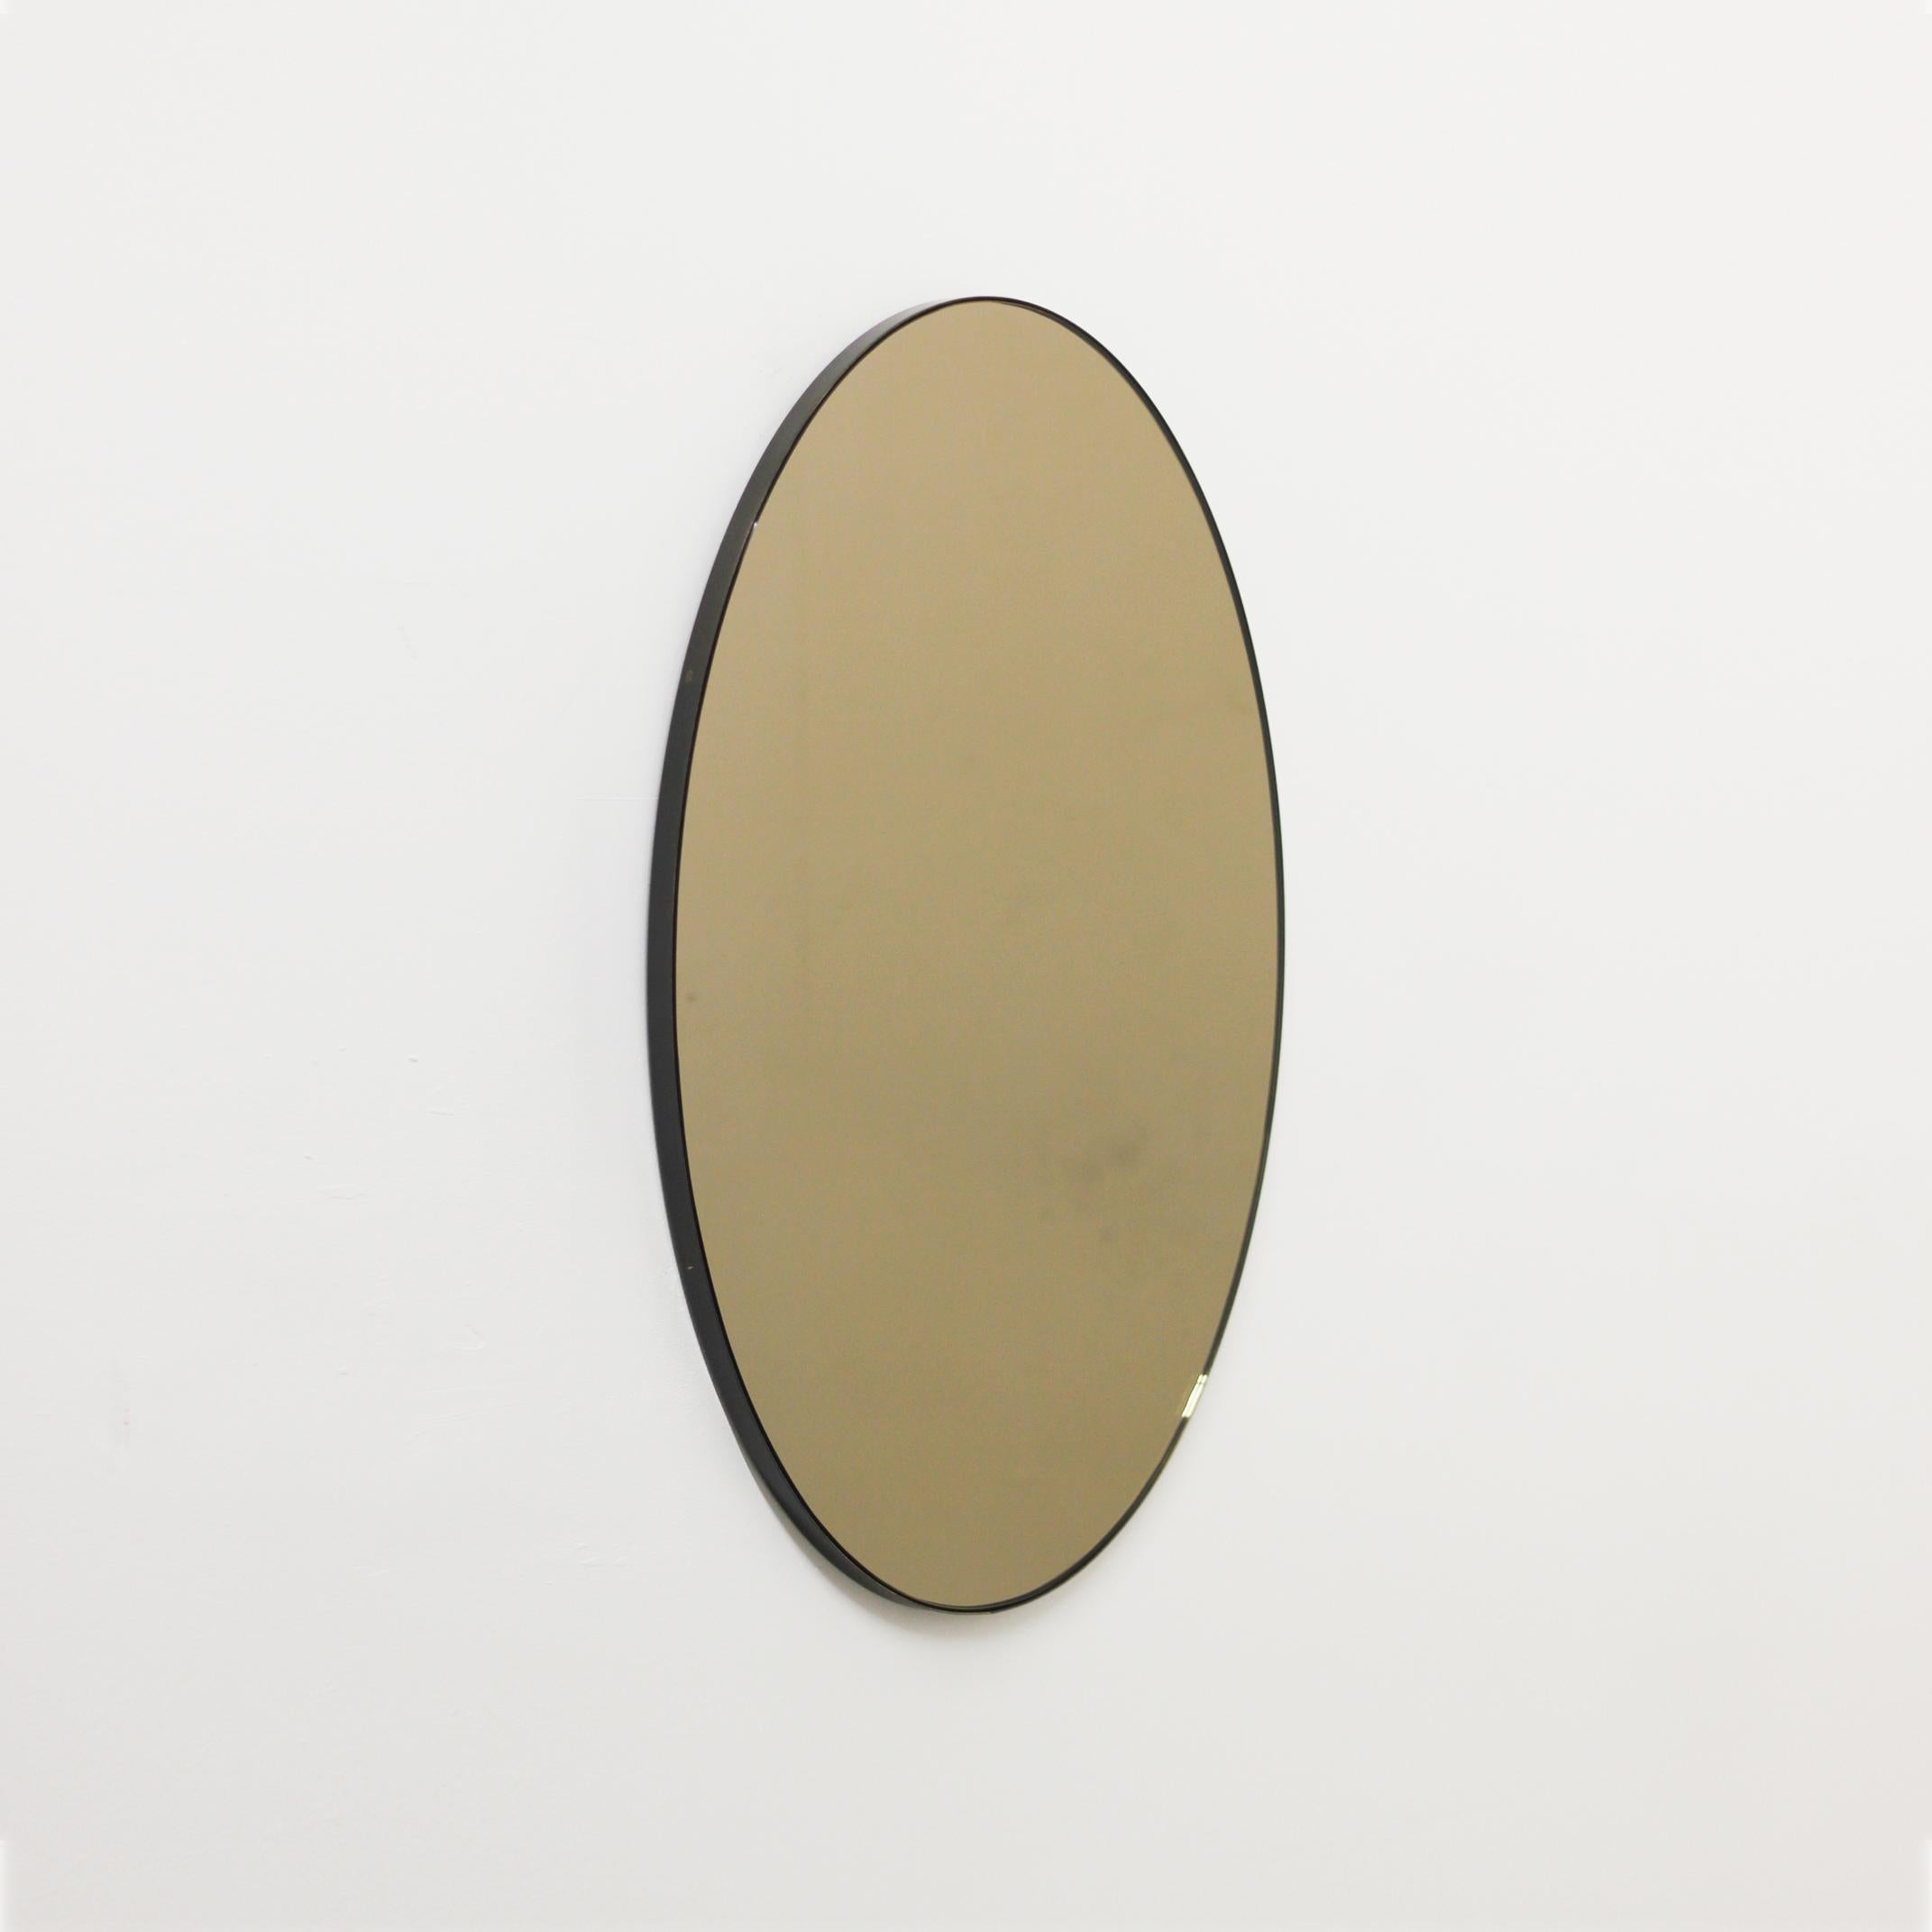 Zeitgenössischer ovaler, bronzefarben getönter Spiegel mit einem eleganten, bronzefarben patinierten Messingrahmen. Entworfen und handgefertigt in London, UK. Die Lieferung erfolgt komplett montiert mit einem speziellen Aufhängesystem für eine